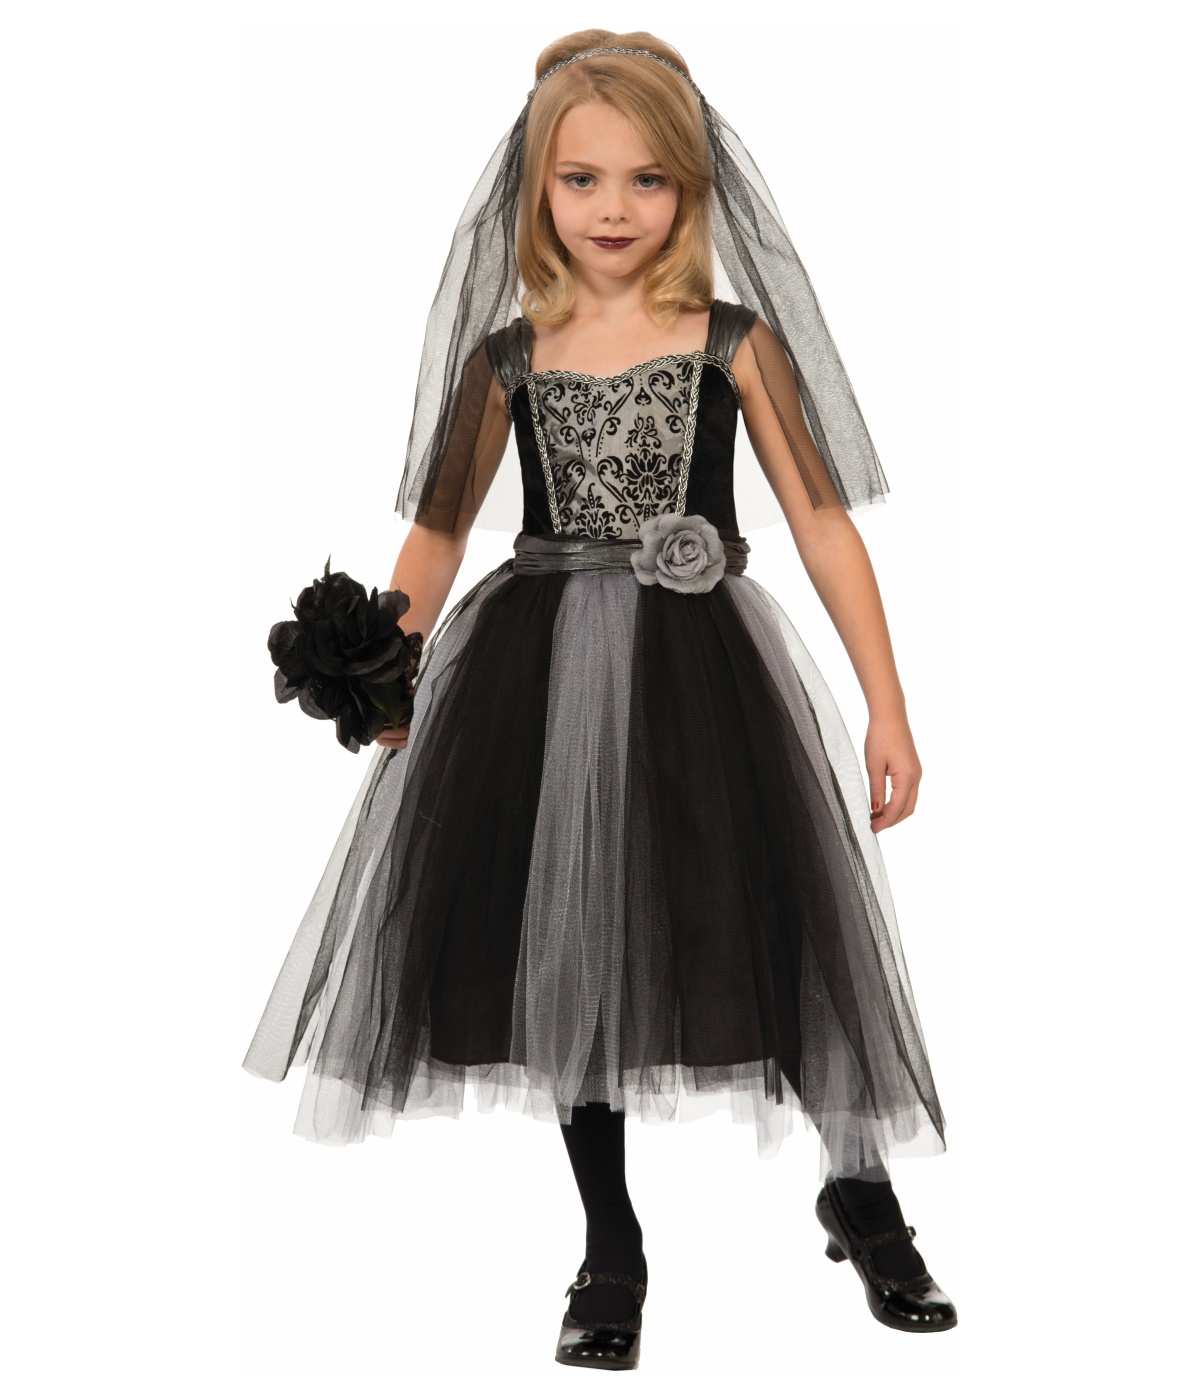  Girls Dark Bride Gothic Costume